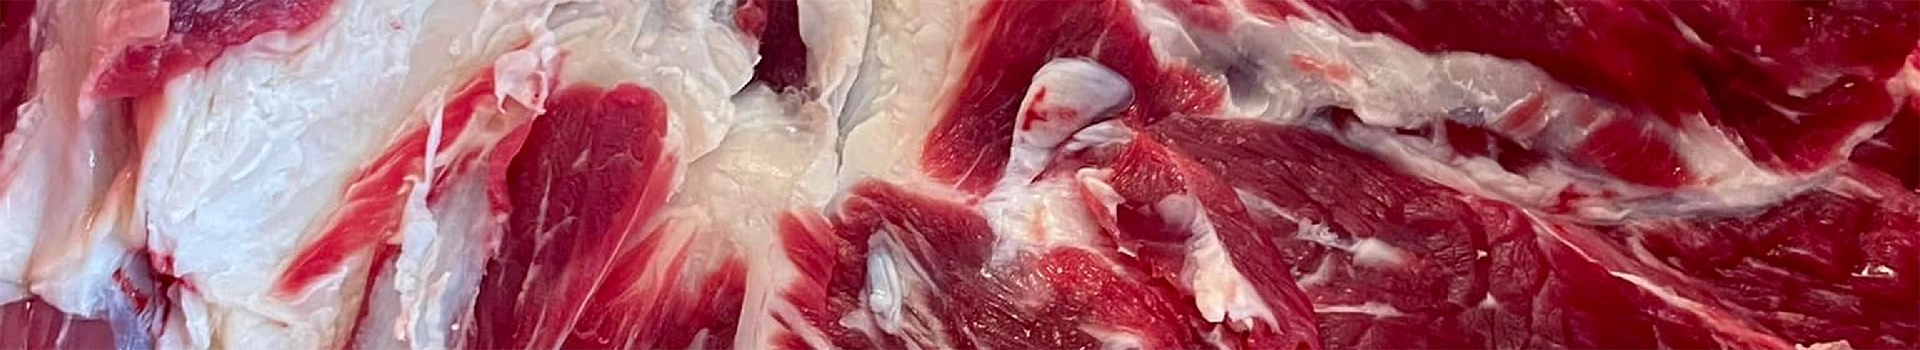 przekrojone mięso wołowe